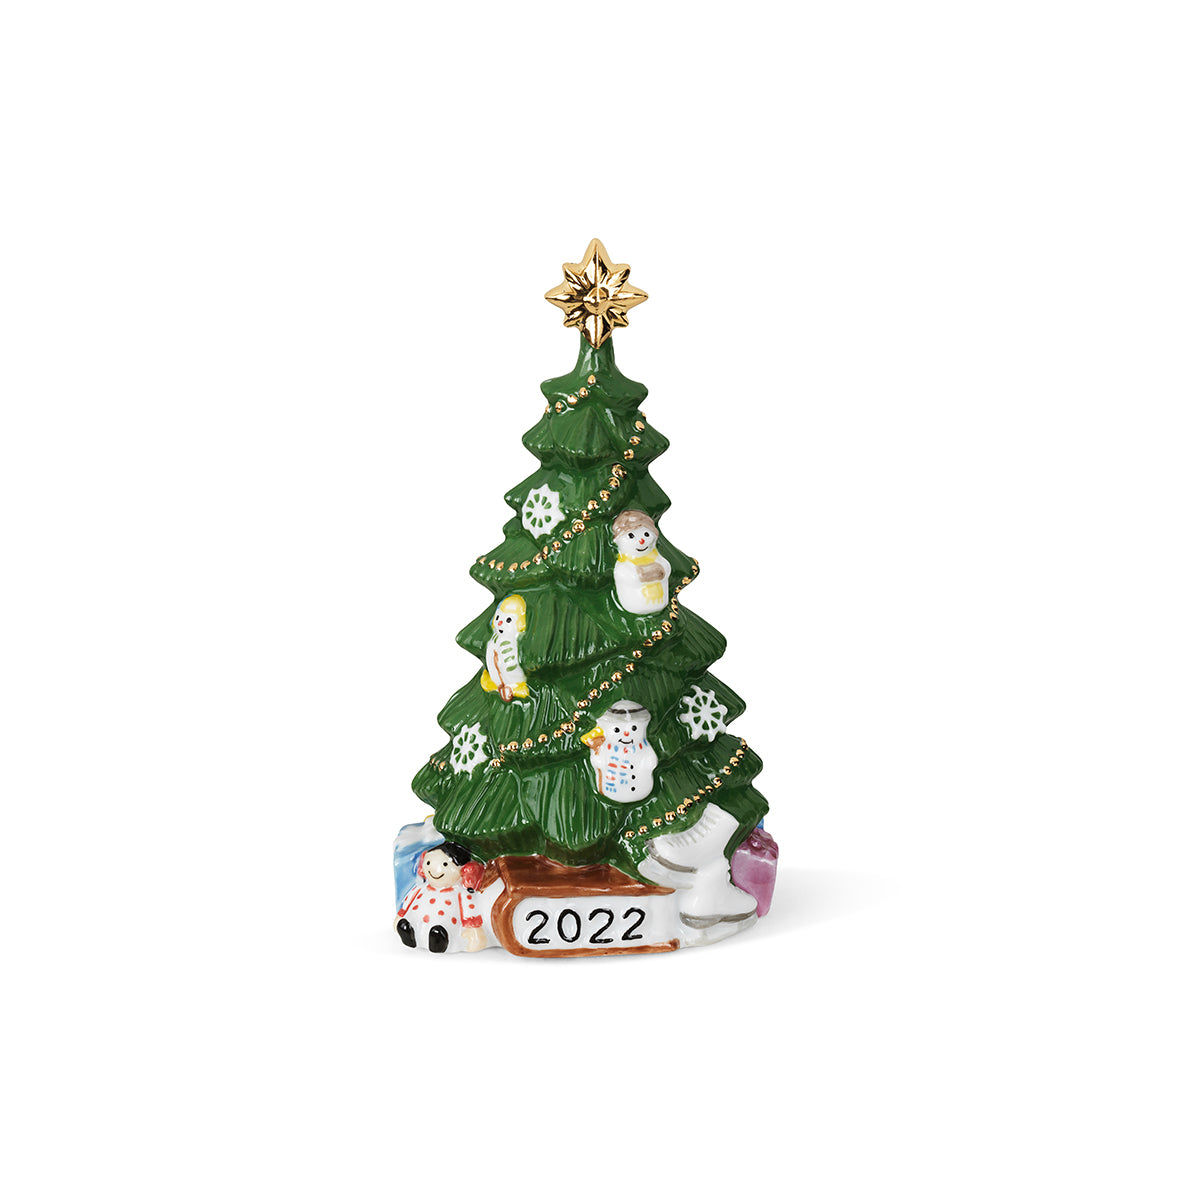 Royal Copenhagen Weihnachtsbaum 2022 Edition